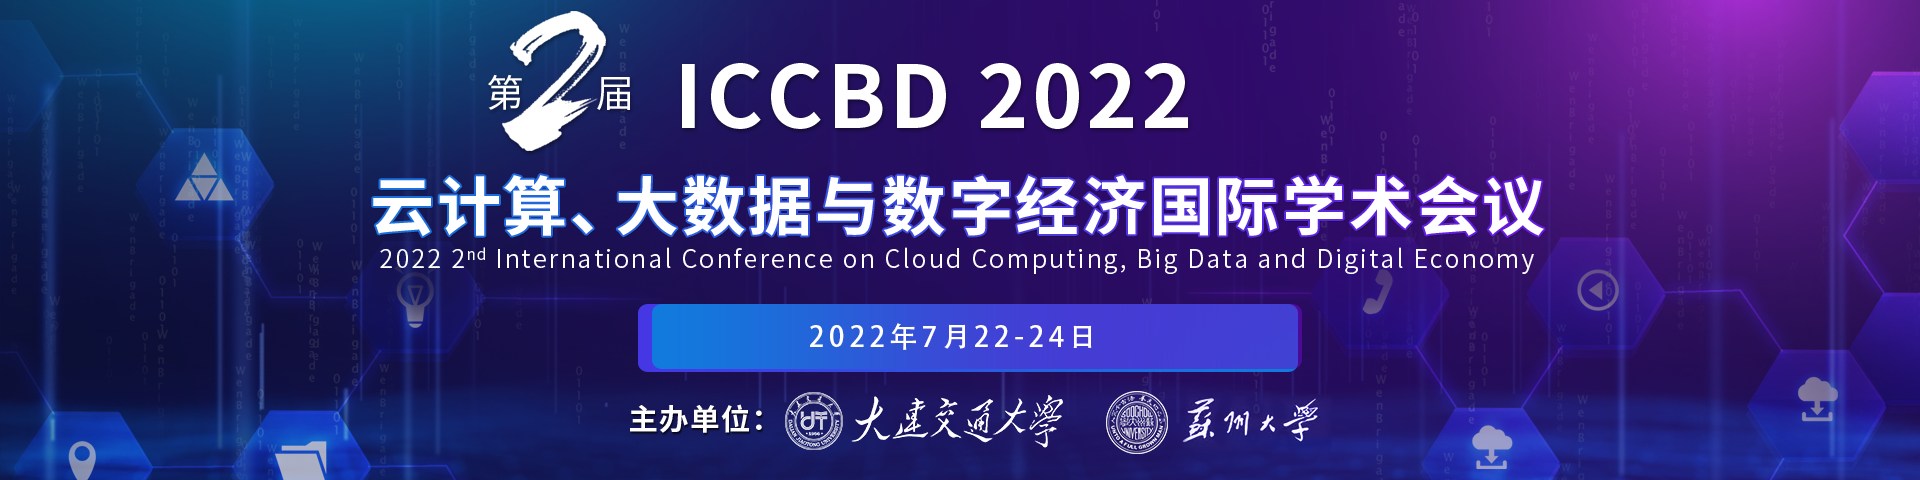 7月大连-ICCBD2022-艾思平台-尹旭舟20220331.png